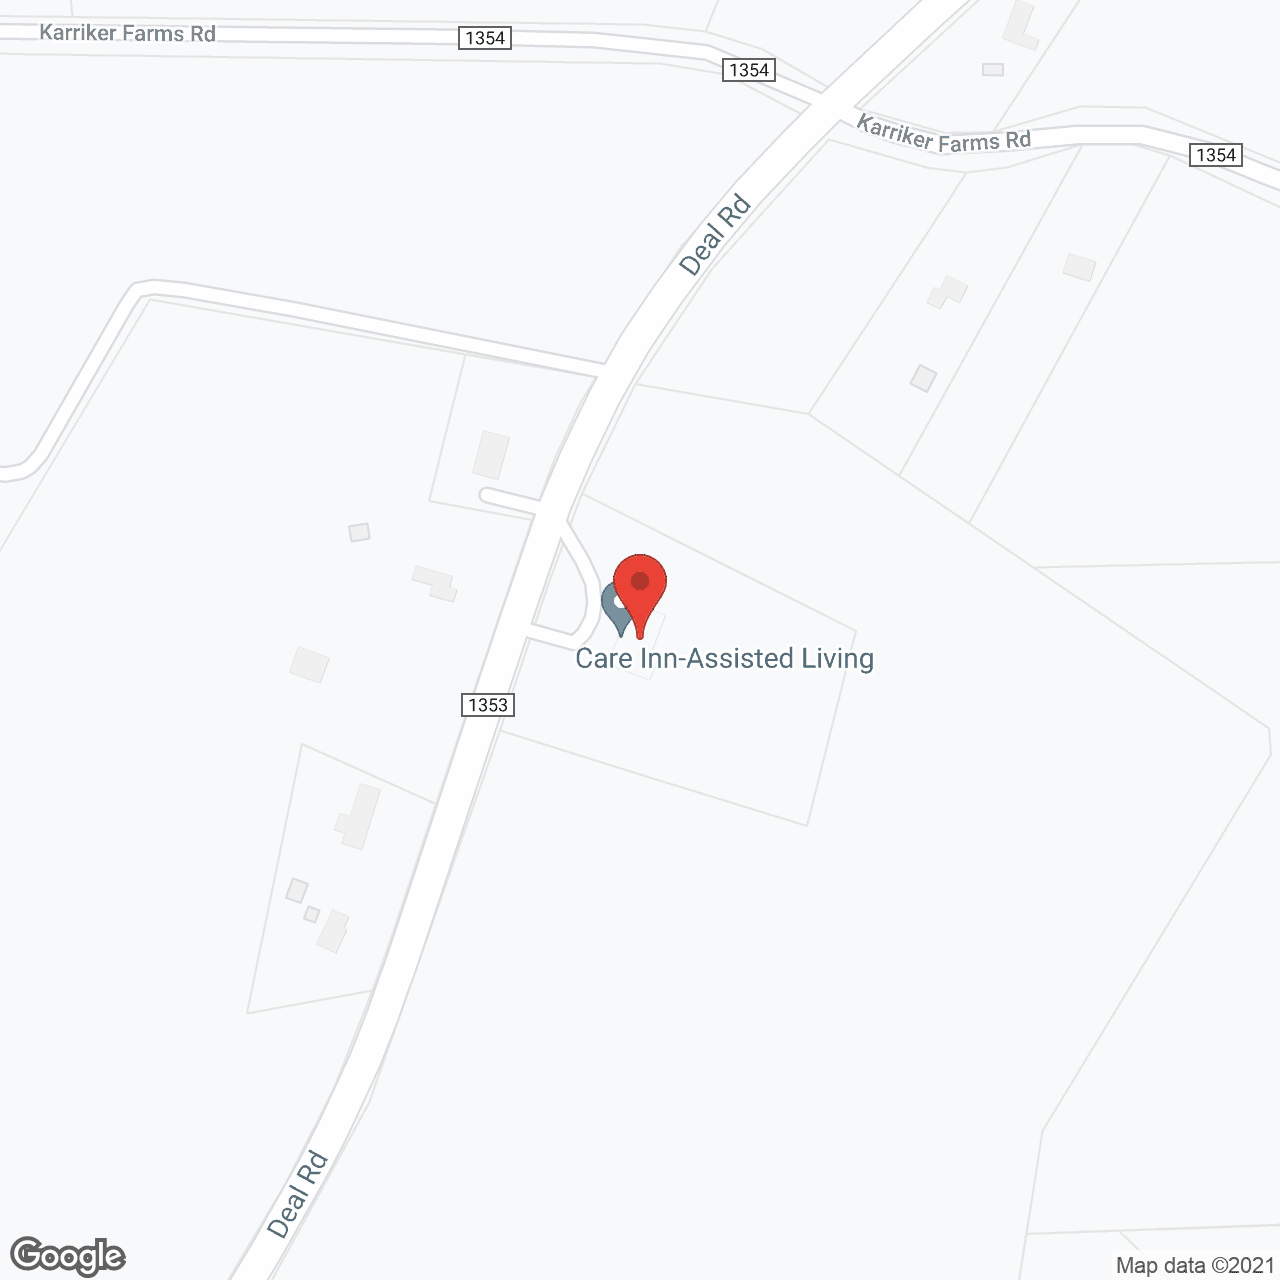 Deal Care Inn in google map